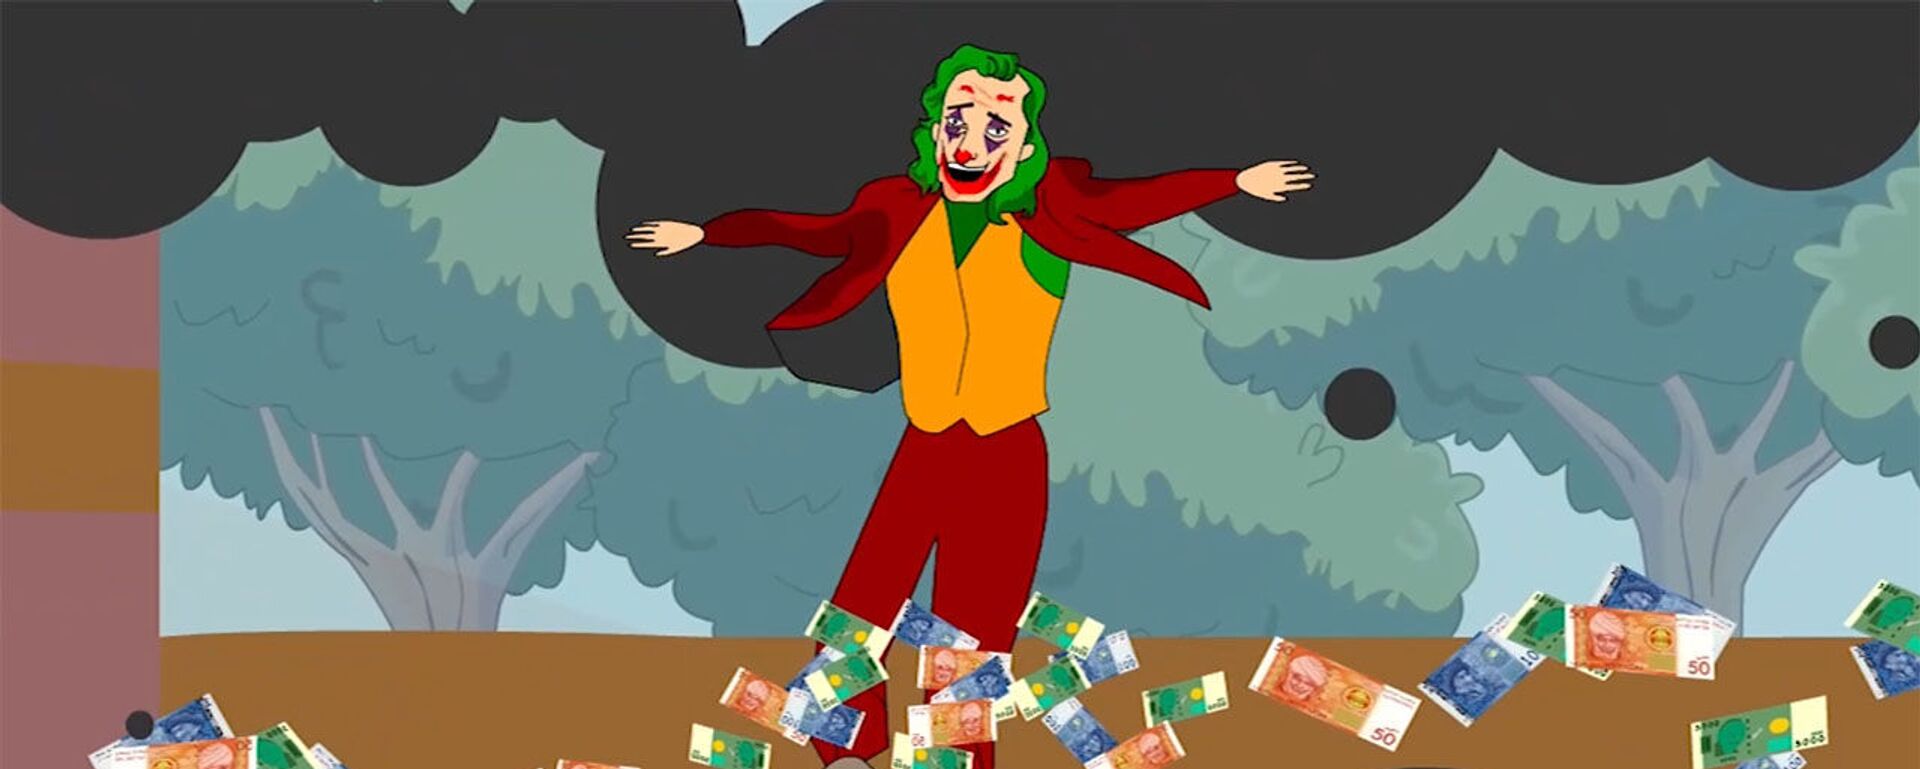 Как накопить деньги, если зарплата 15 тыс сомов — урок от Джокера. Мультик - Sputnik Кыргызстан, 1920, 01.09.2021